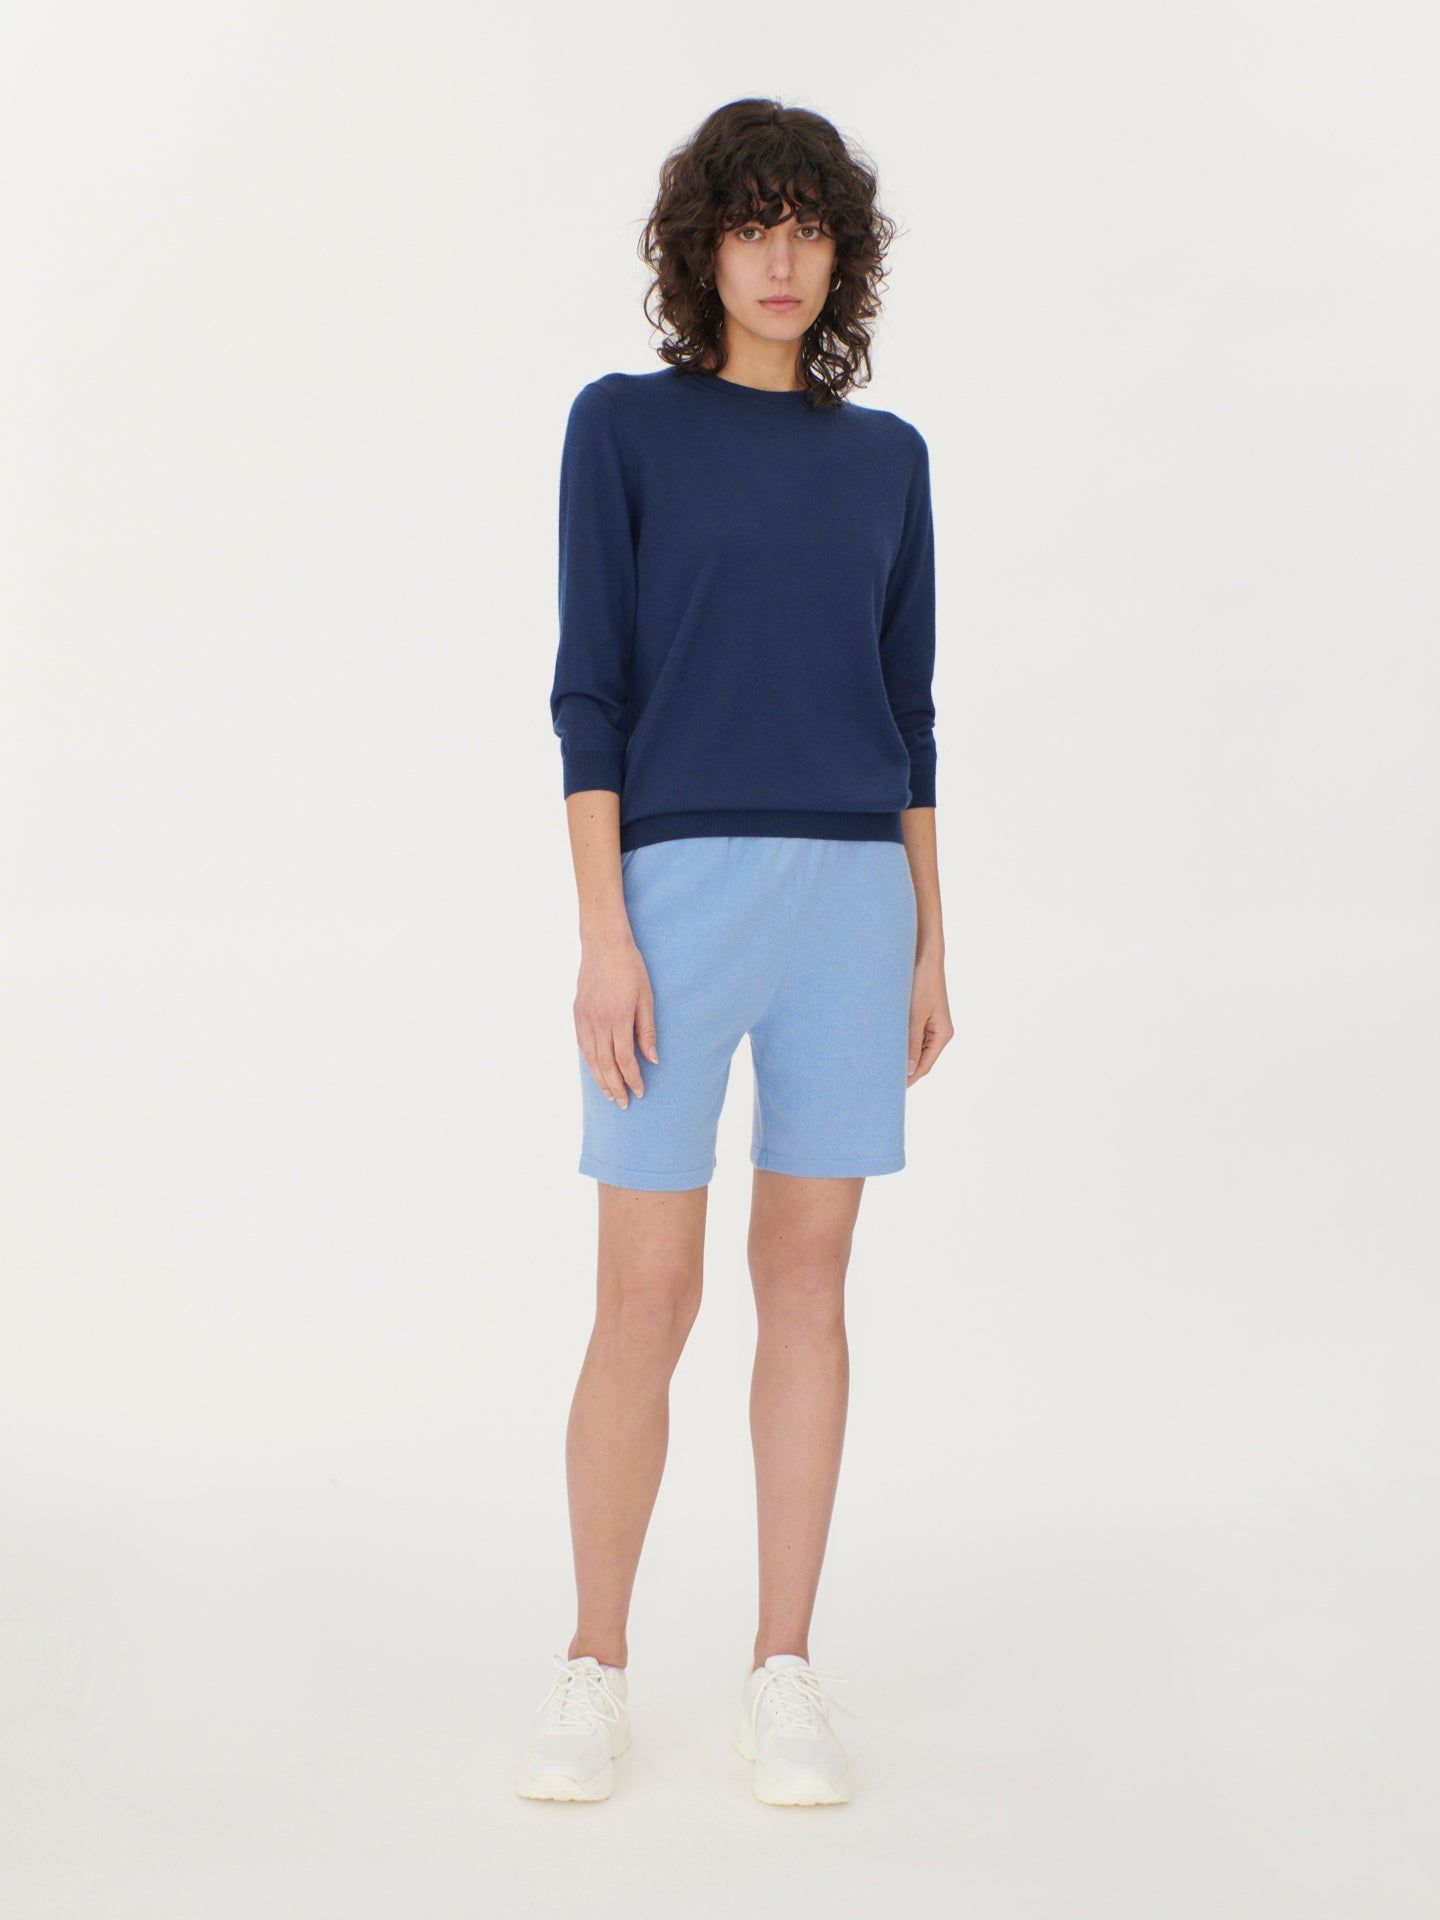 Women's Silk Cashmere Short-Sleeved R-Neck Top Navy - Gobi Cashmere